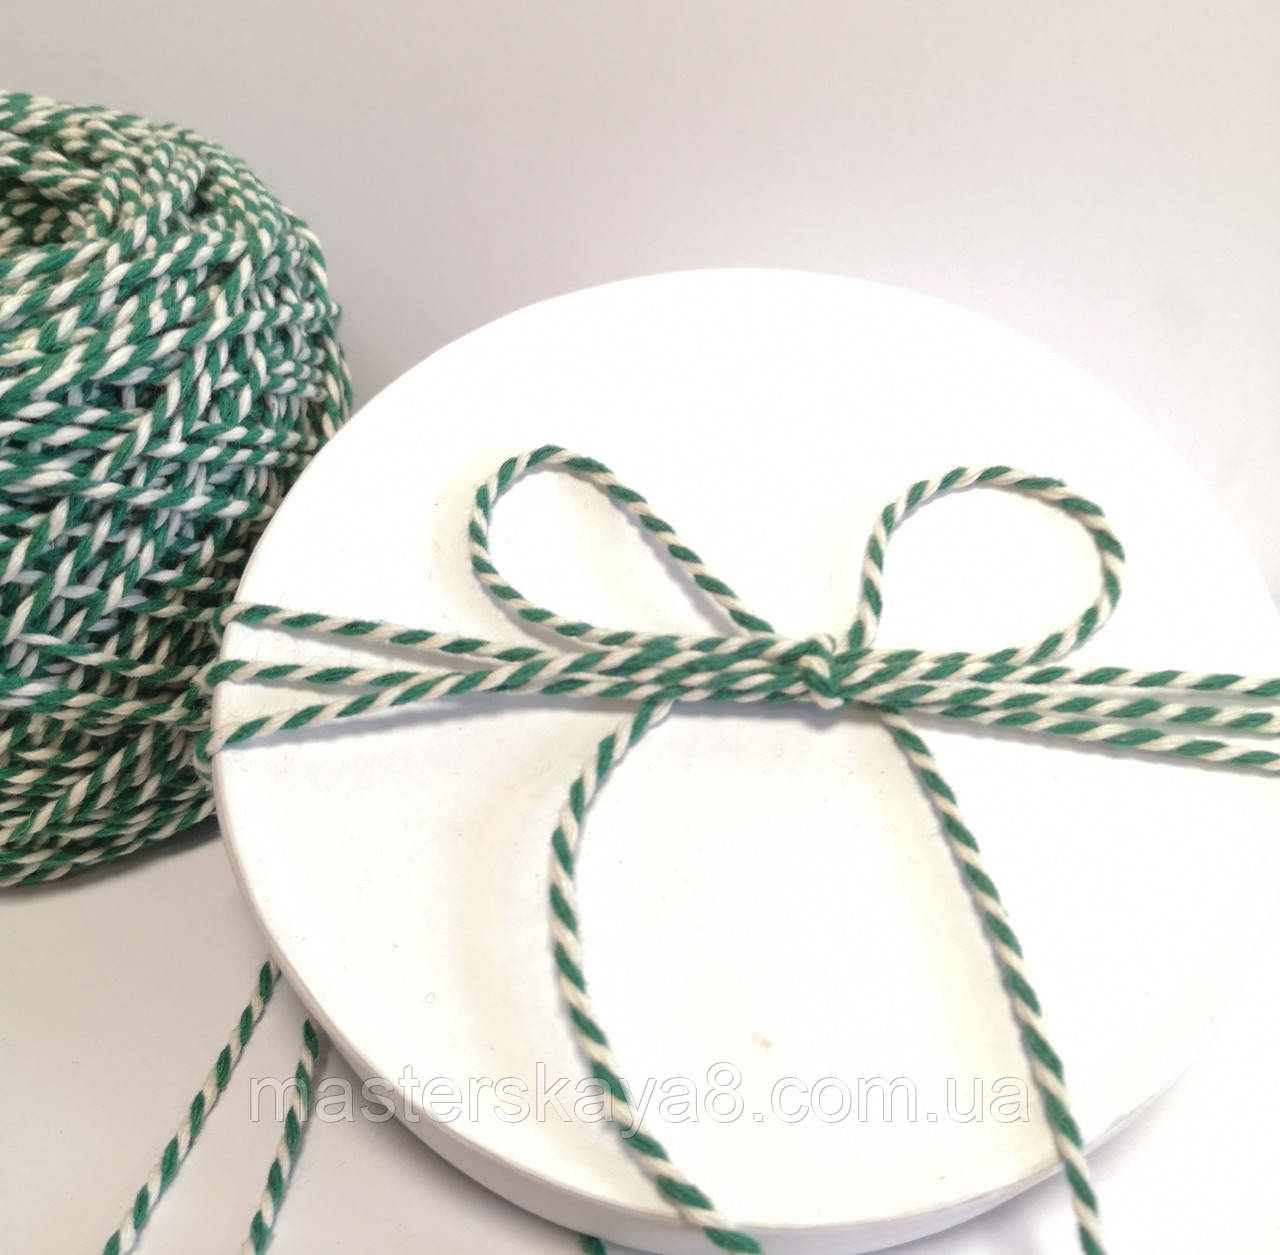 Кольоровий шпагат бавовна, мотузка, декоративний шнур для упаковки, колір зелений з білим